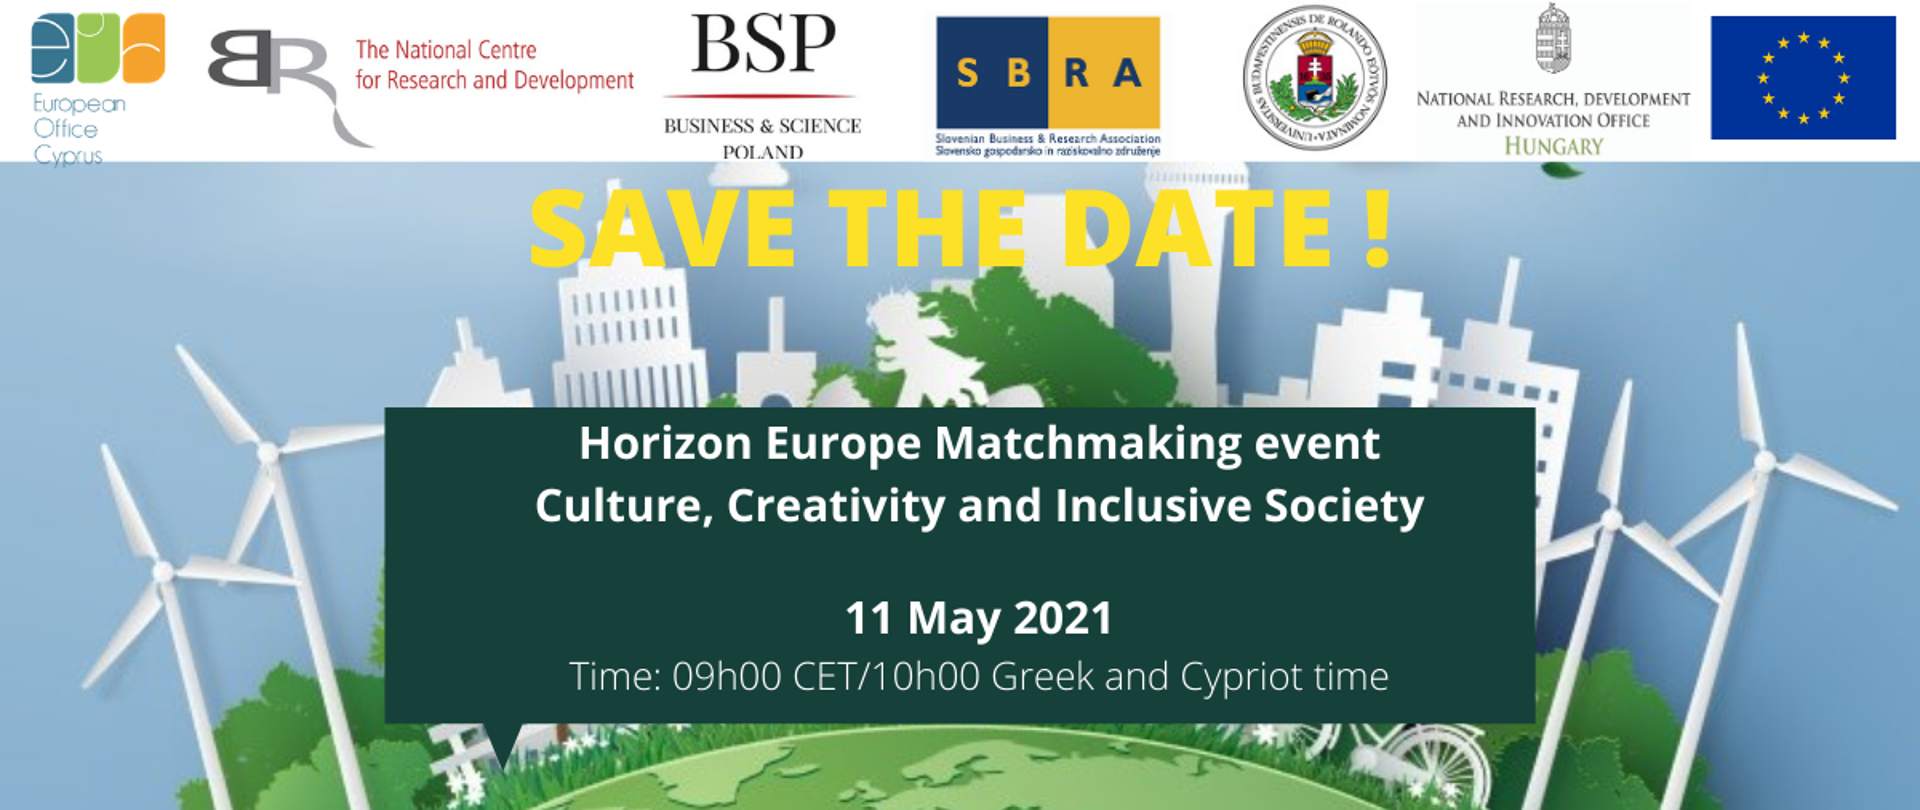 Spotkanie informacyjne i networkingowe dotyczące obszaru
Kultura, kreatywność i integracyjne społeczeństwo/Klaster 2 w programie Horyzont Europa
